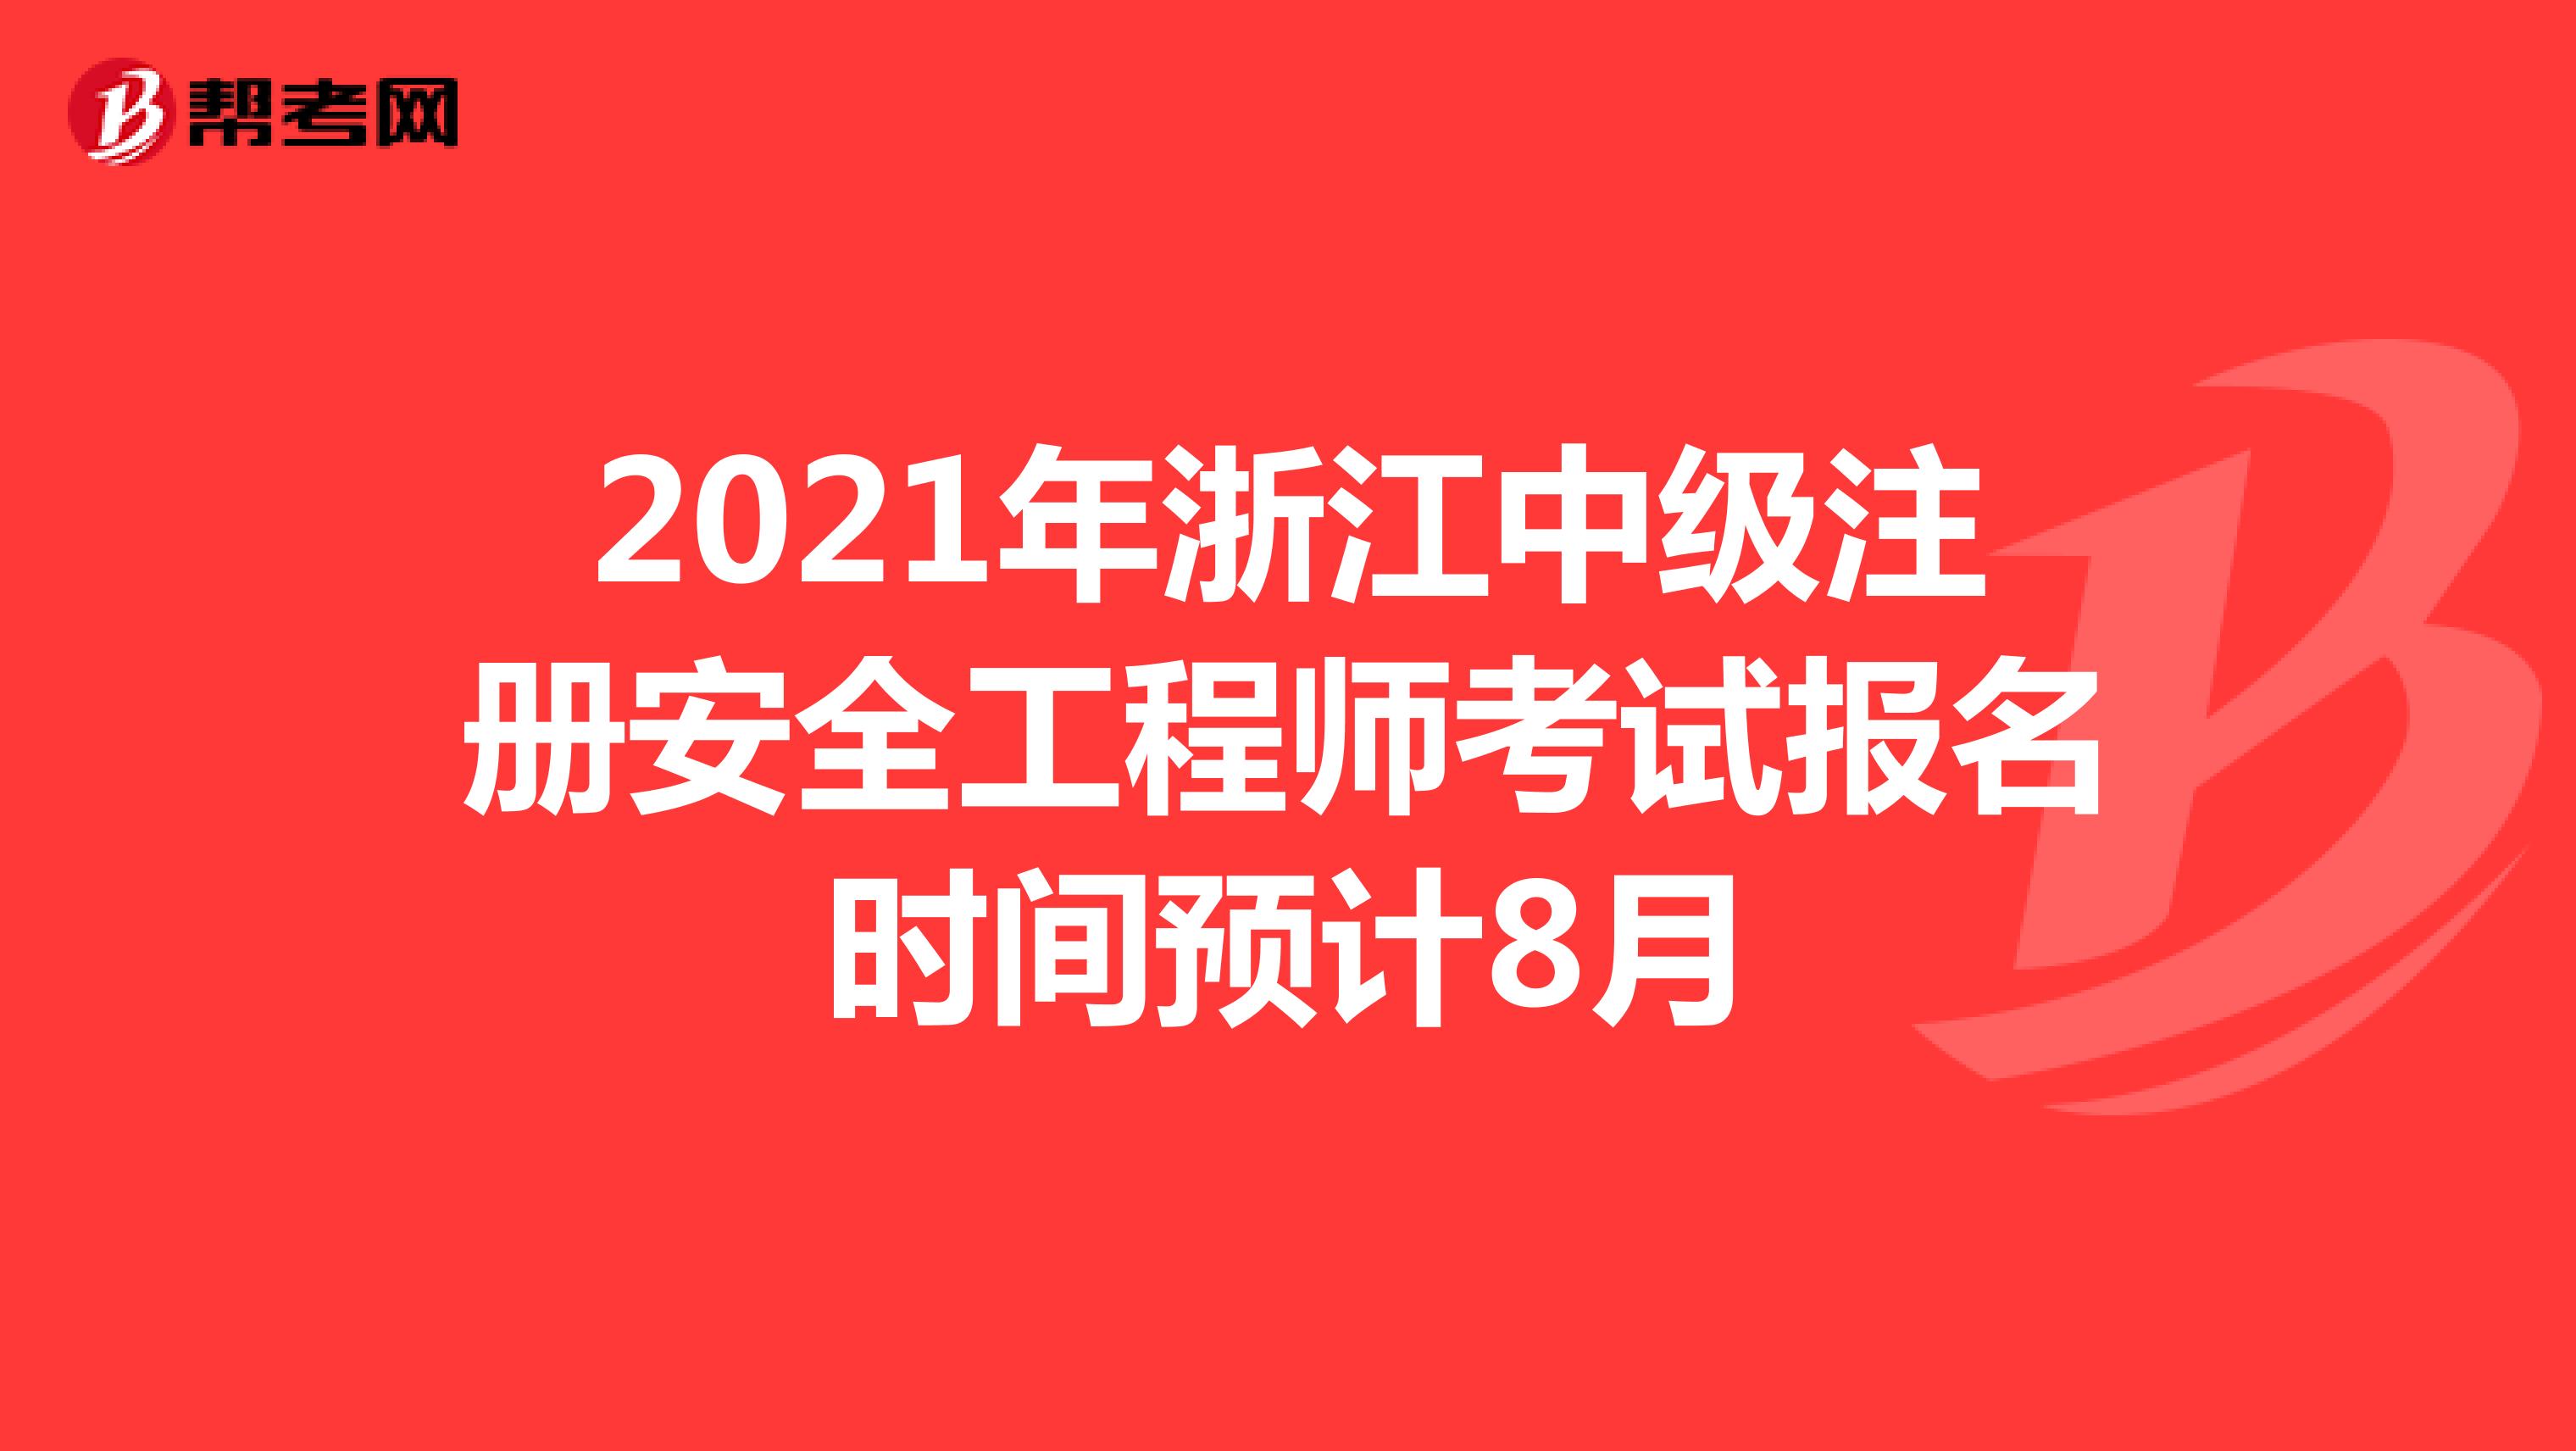 2021年浙江中级注册安全工程师考试报名时间预计8月